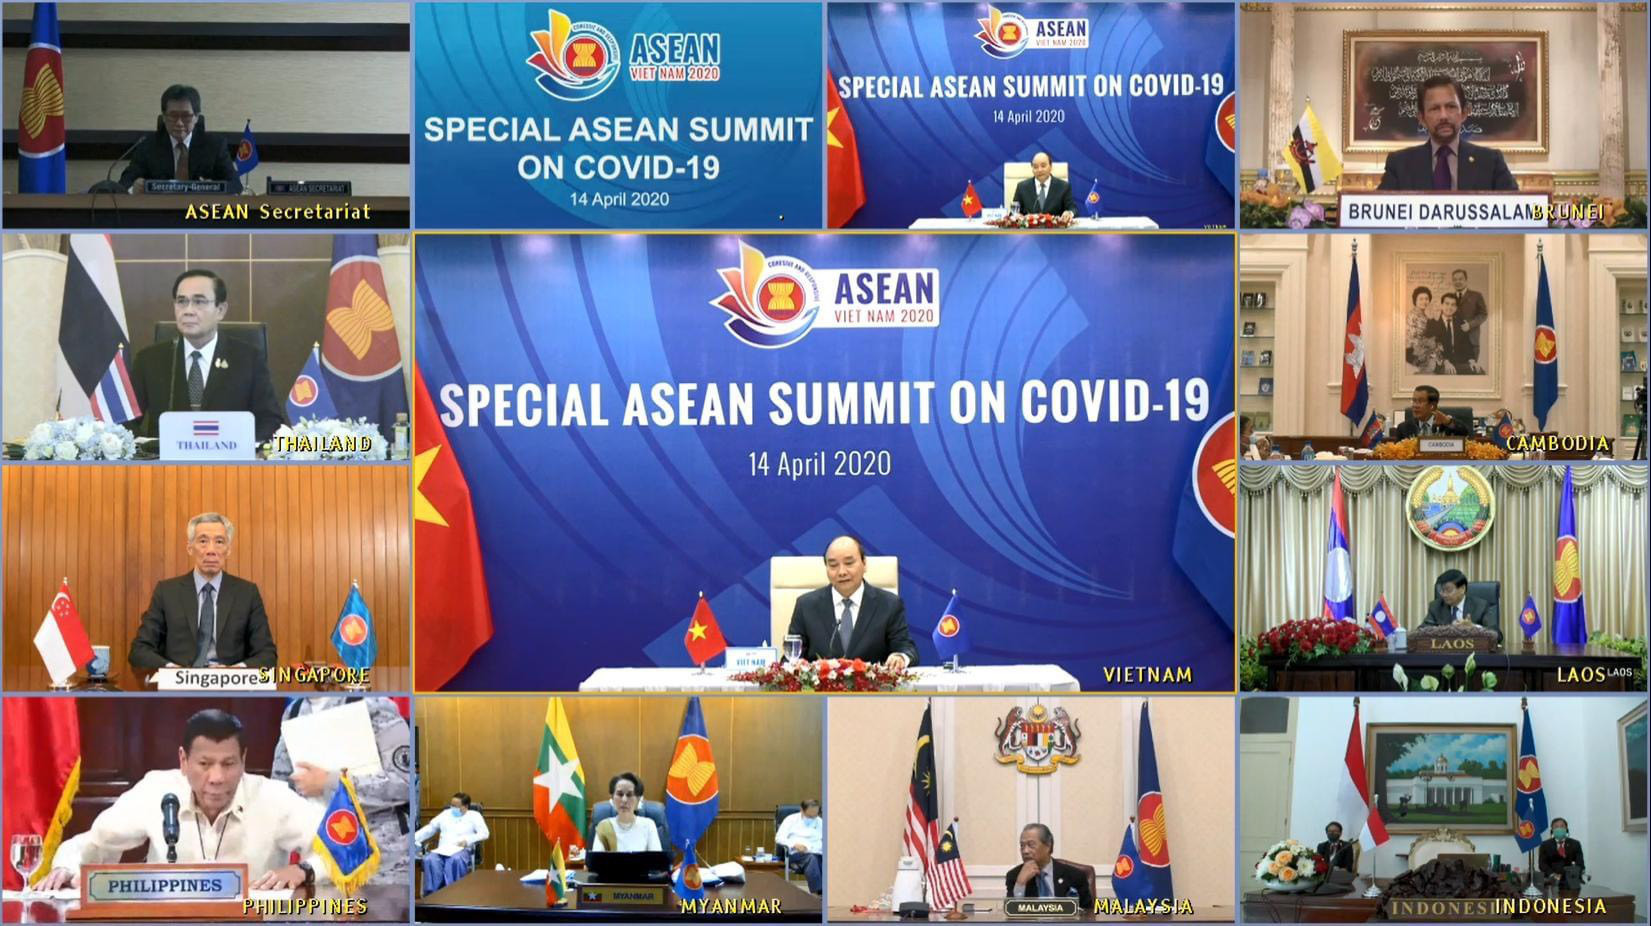 Hội nghị cấp cao ASEAN lần đầu tiên được tổ chức trực tuyến: Đây là sự tiến bộ vượt bậc về công nghệ của Việt Nam! - Ảnh 2.